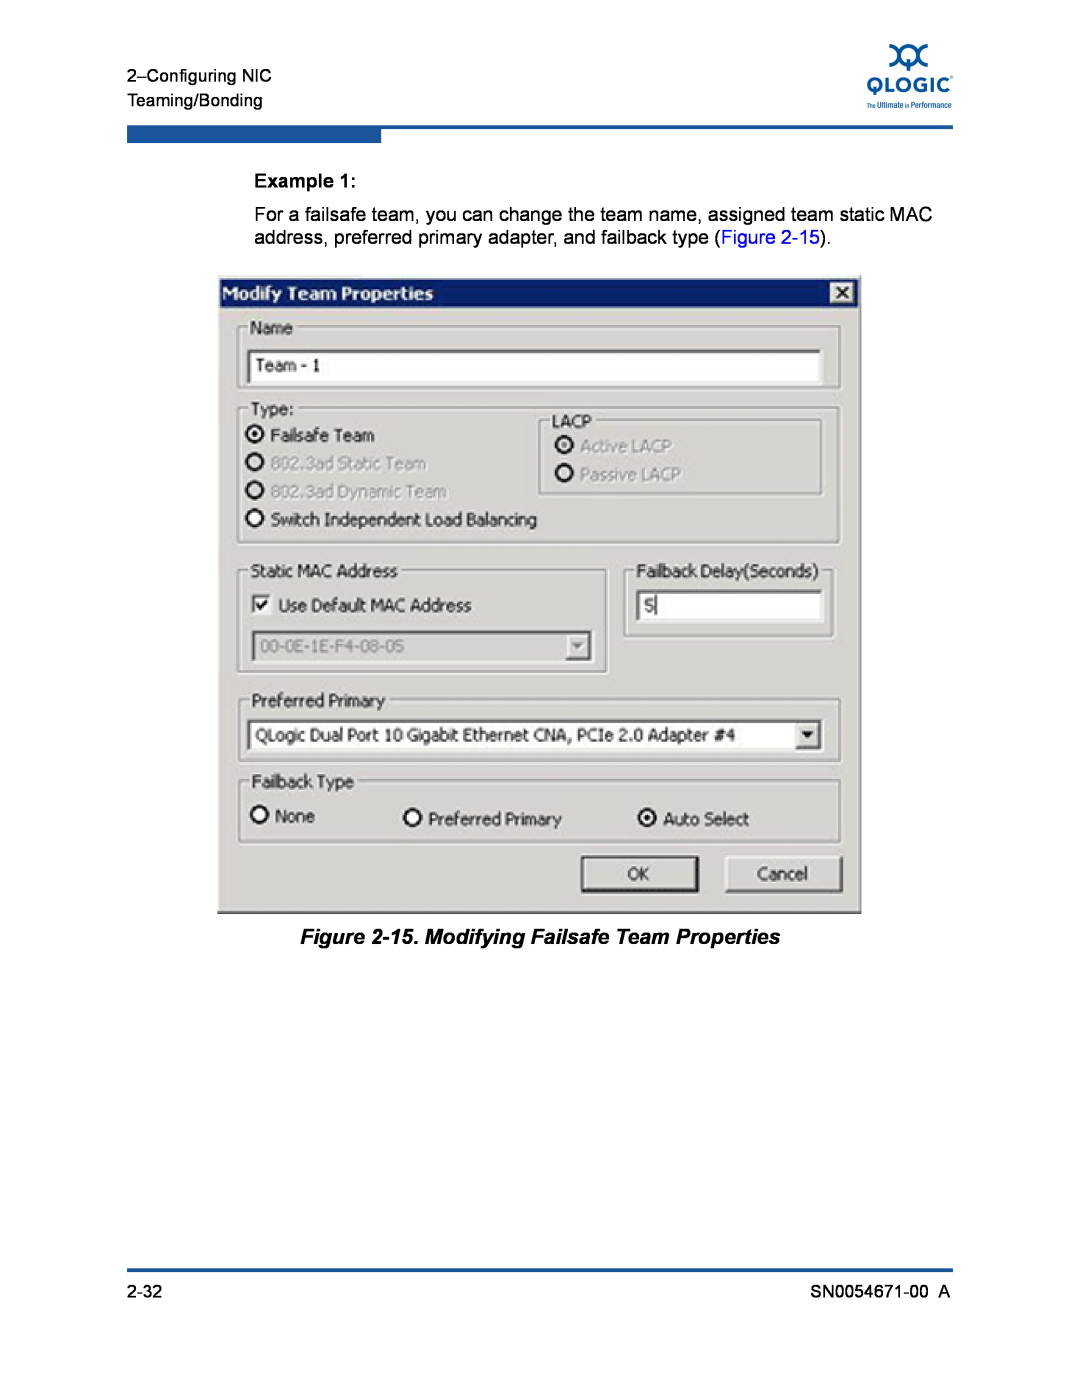 Q-Logic 8200, 3200 manual 15. Modifying Failsafe Team Properties, Example 